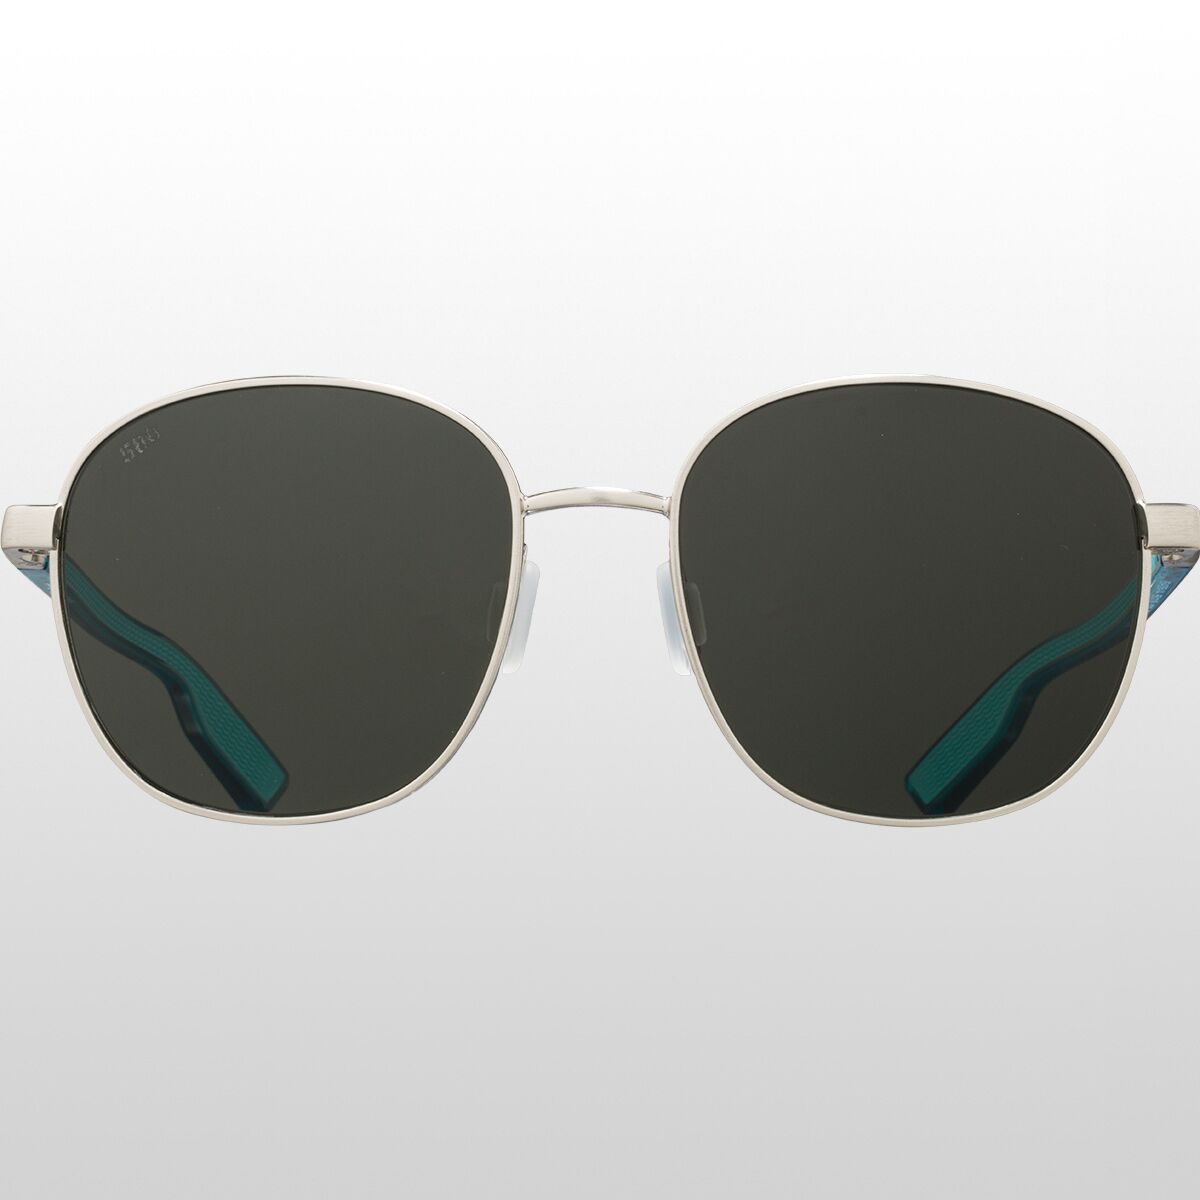 Поляризованные солнцезащитные очки Egret 580G Costa